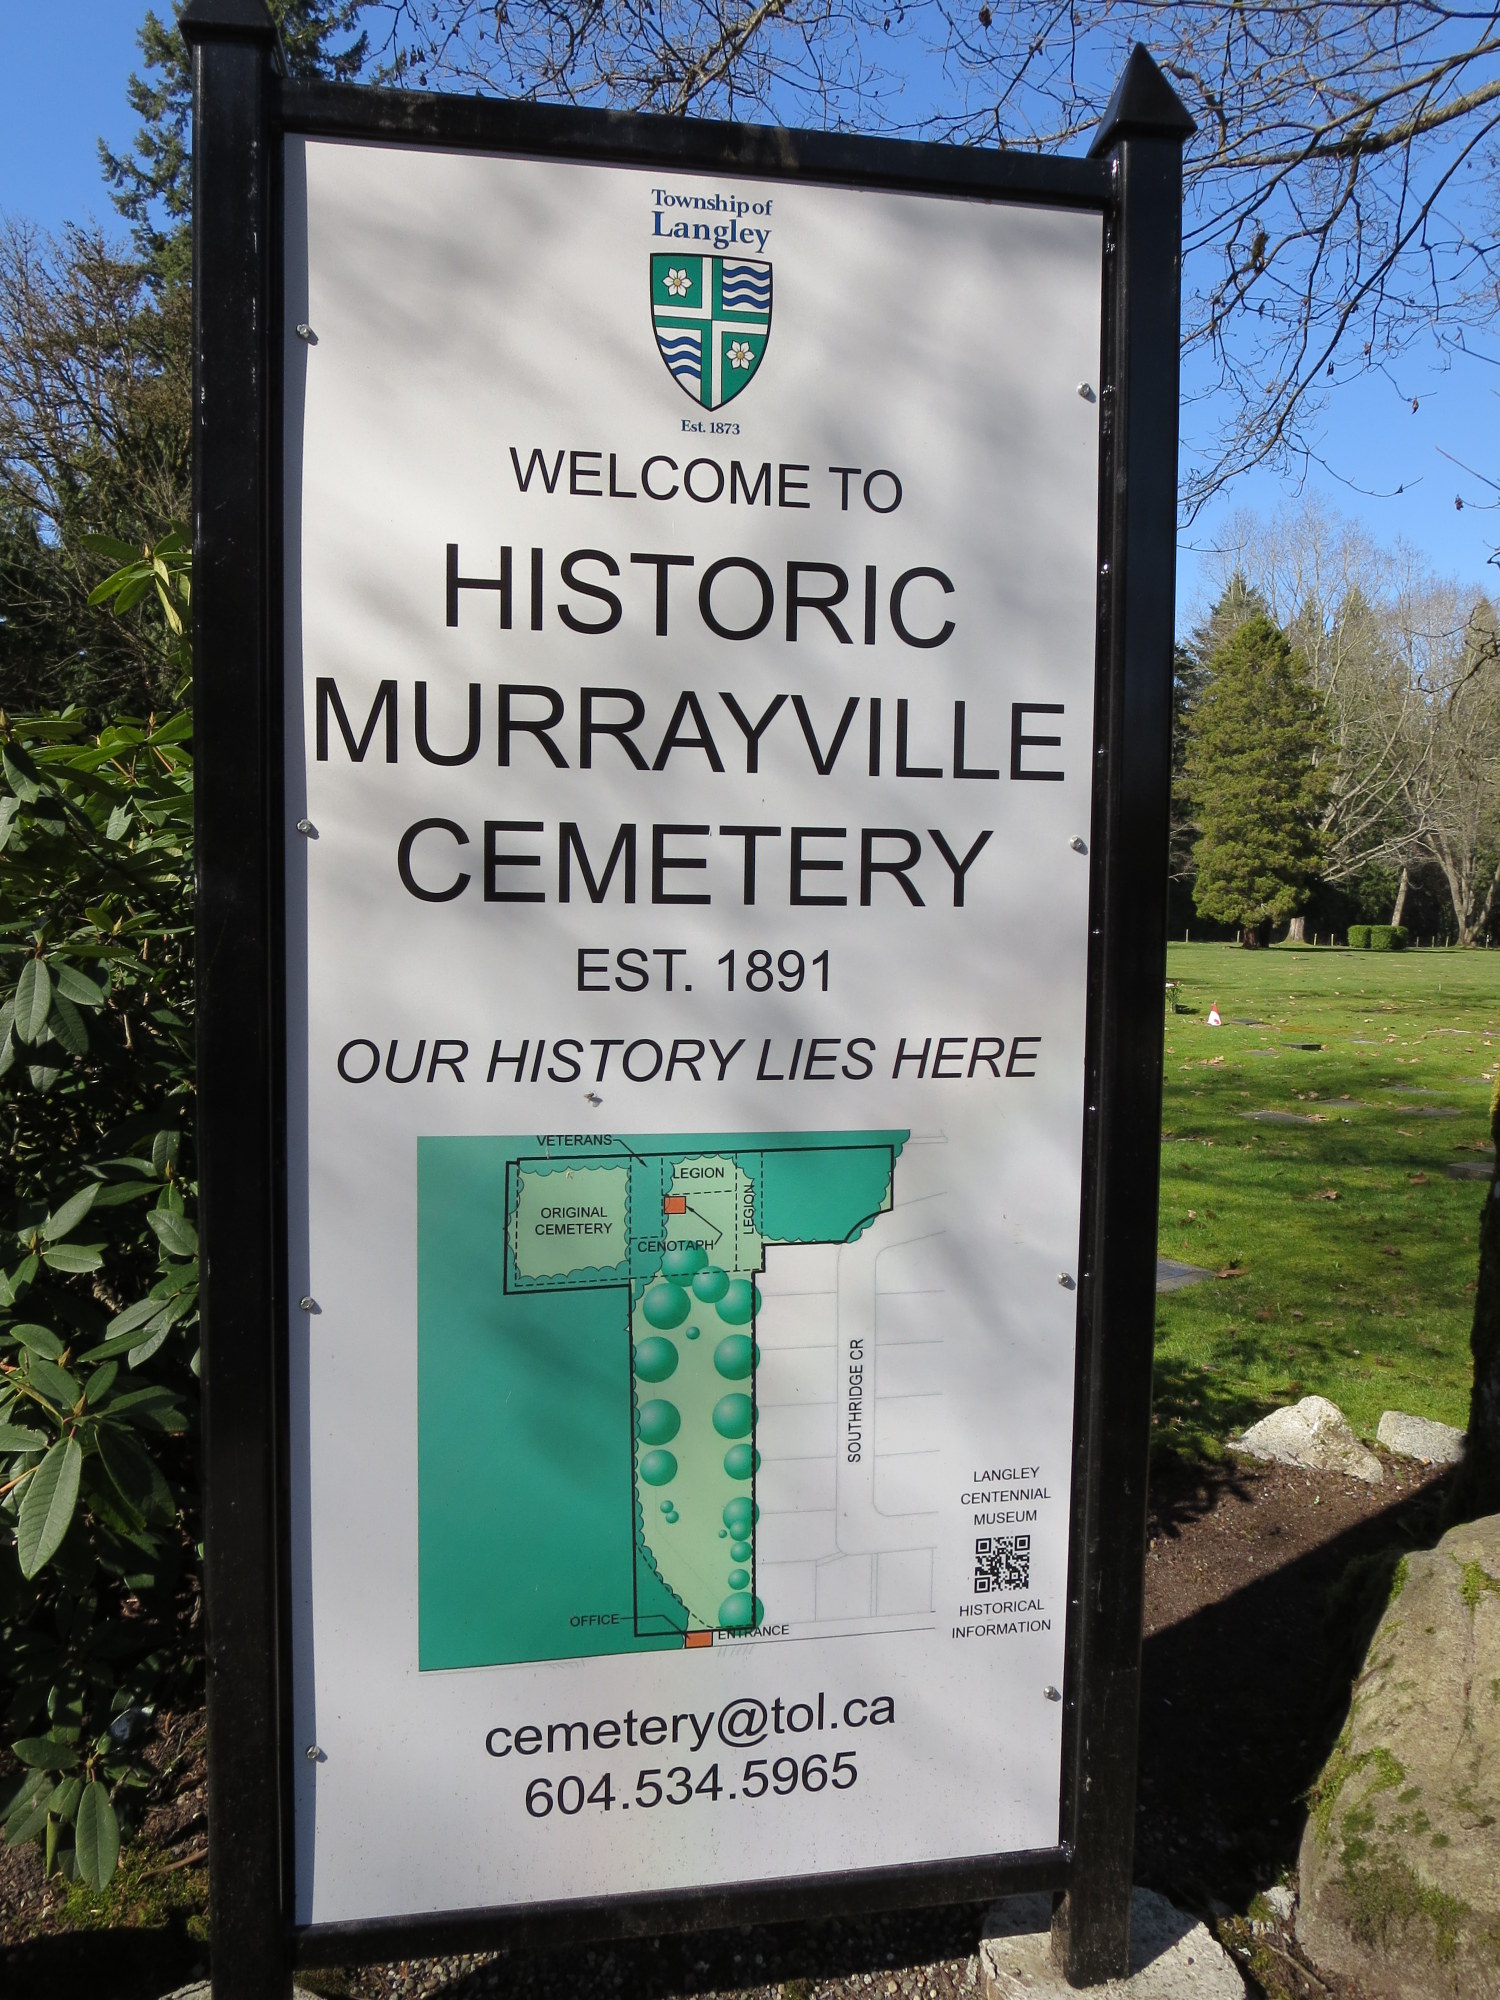 Murrayville Cemetery